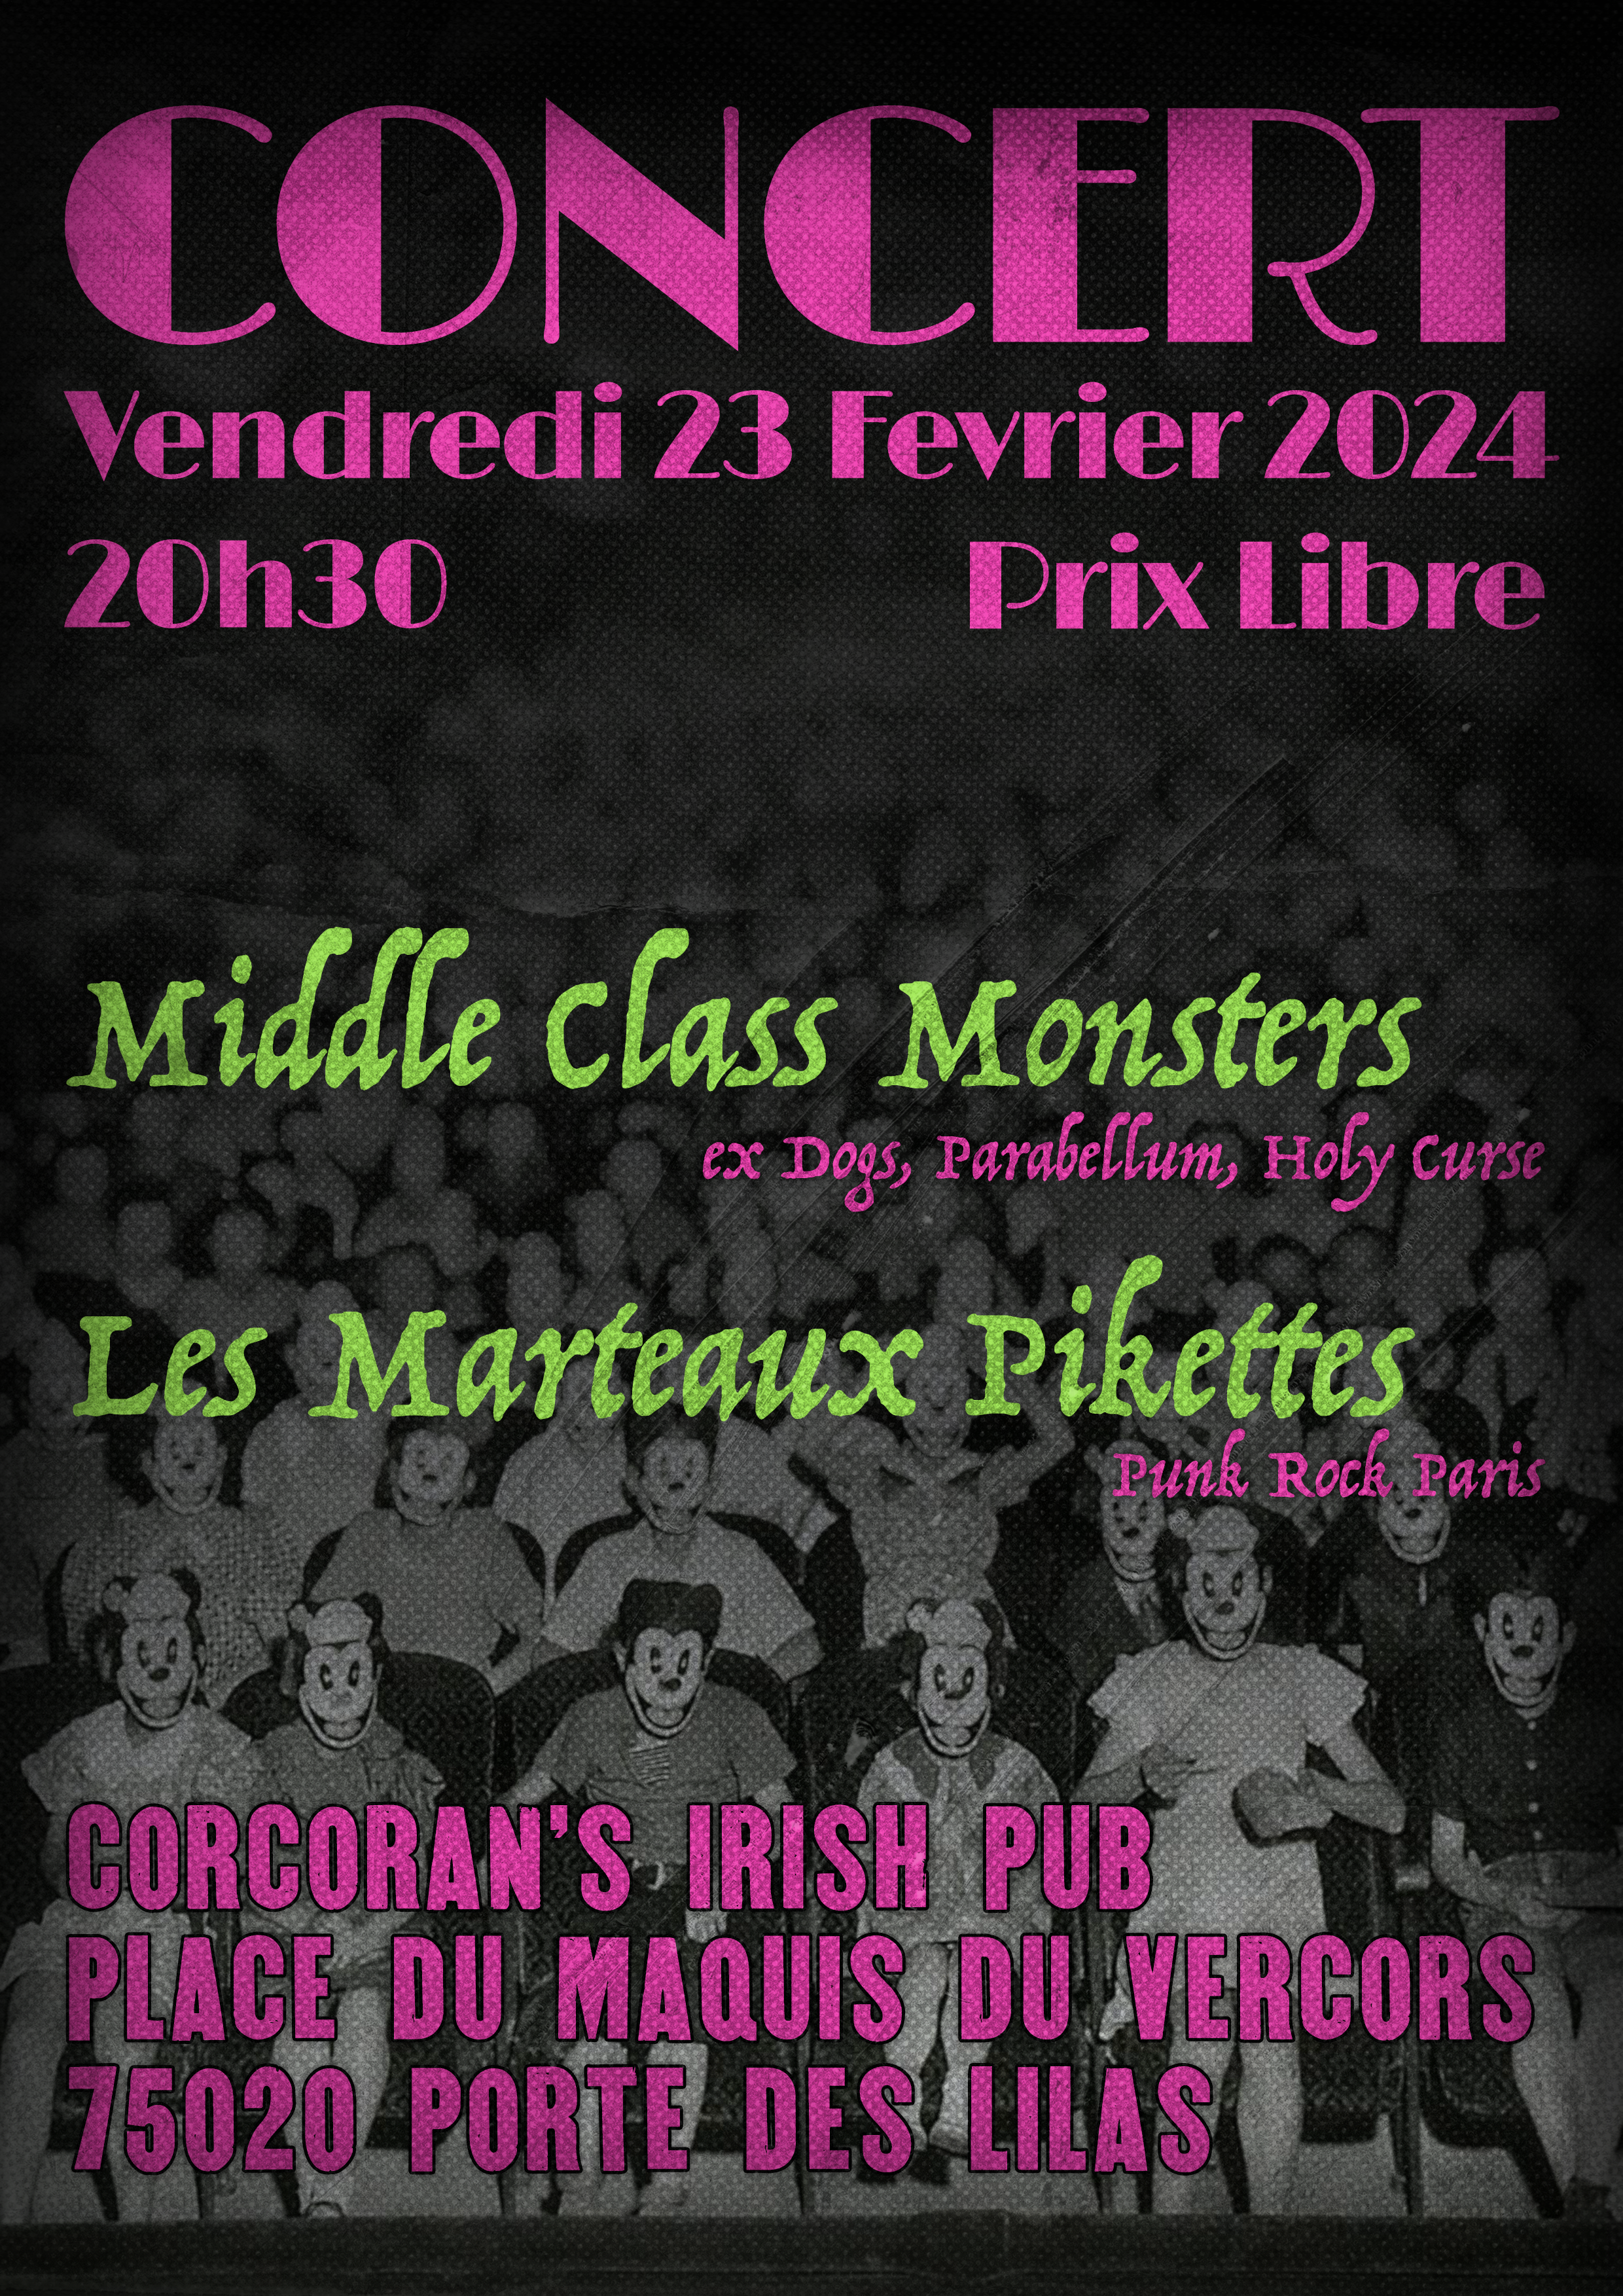 Les Marteaux Pikettes - Concert 23 février 2024